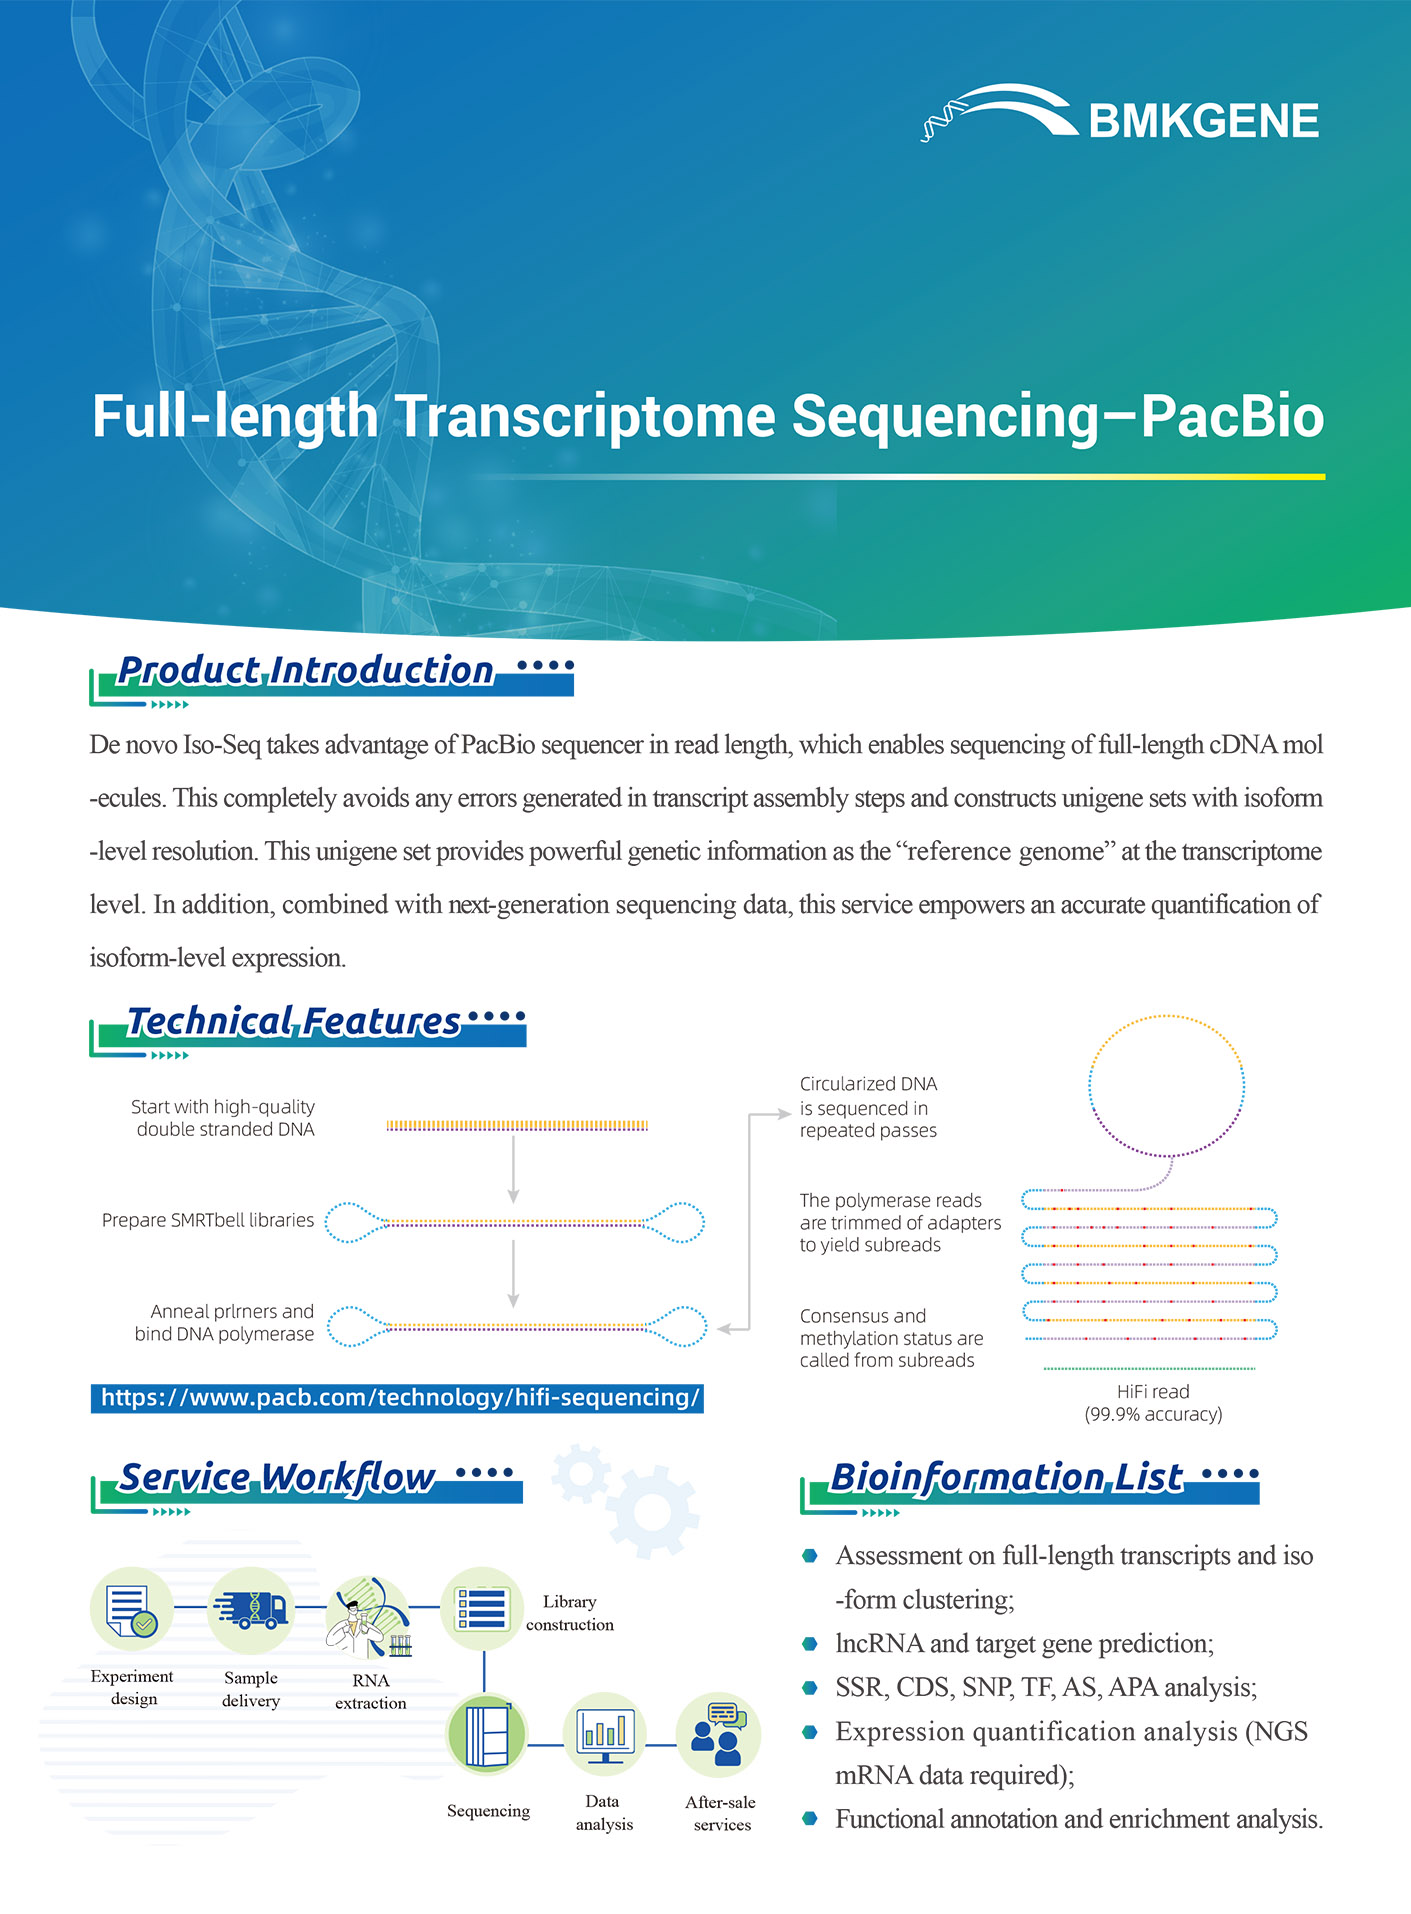 https://www.bmkgene.com/uploads/Full-length-Transcriptome-Sequencing-PacBio-BMKGENE-2023.123.pdf